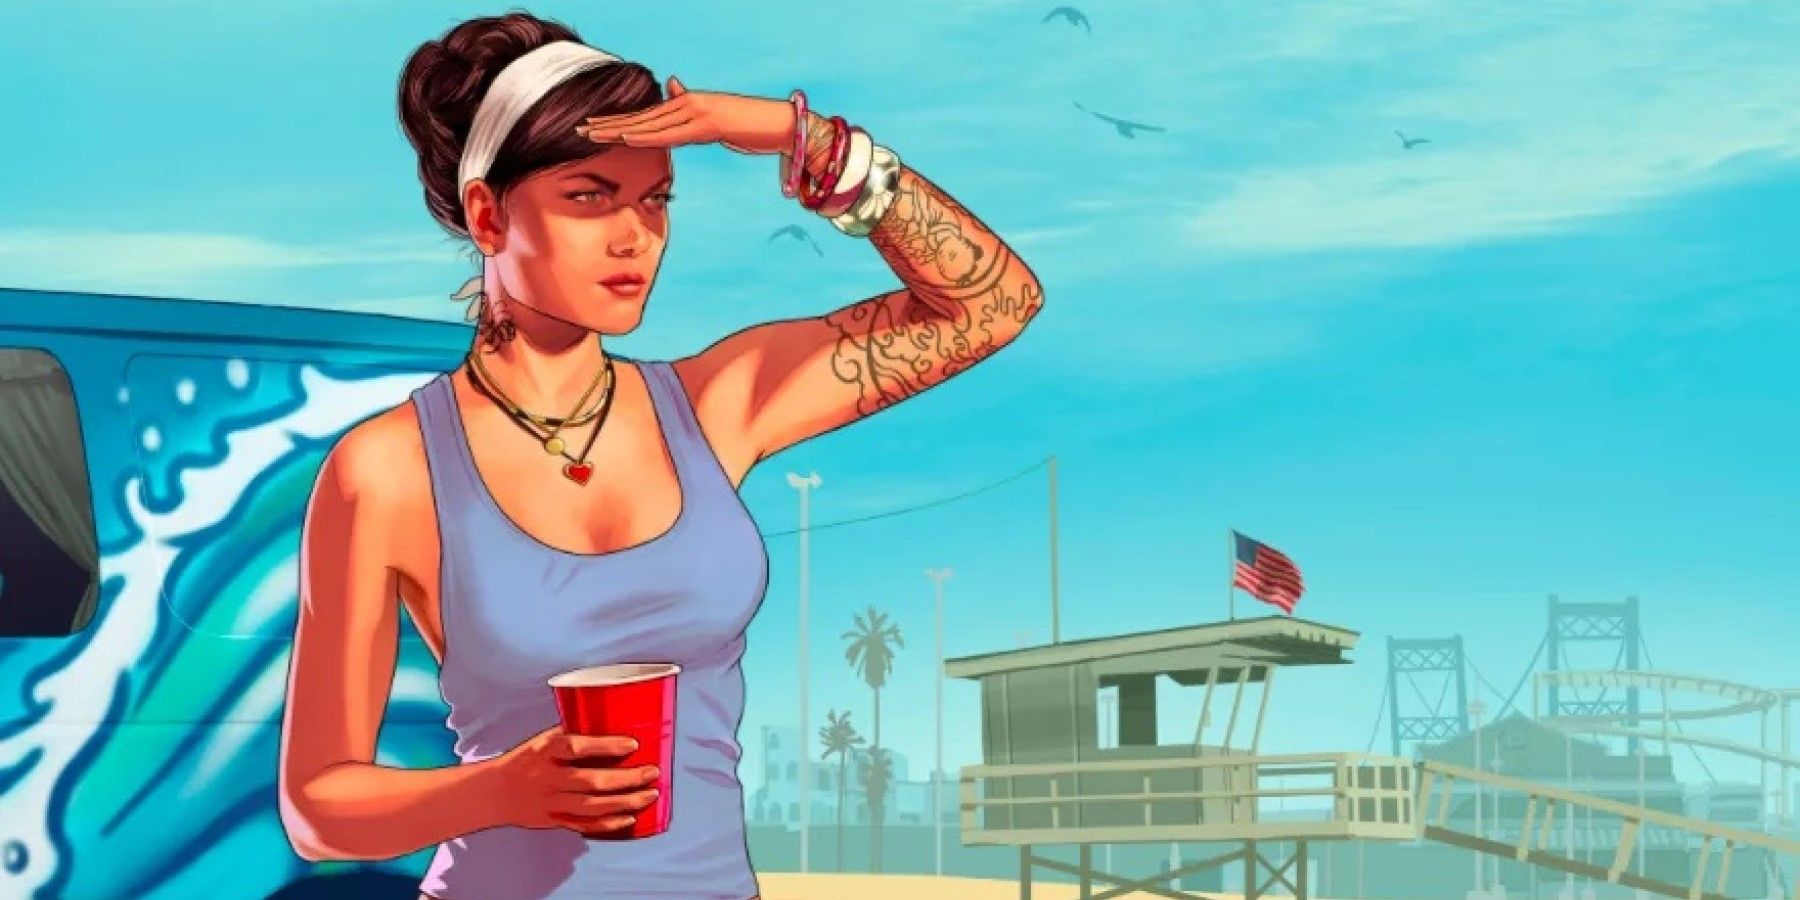 Son Grand Theft Auto 6 Söylentileri, Sızıntıları ve Raporları